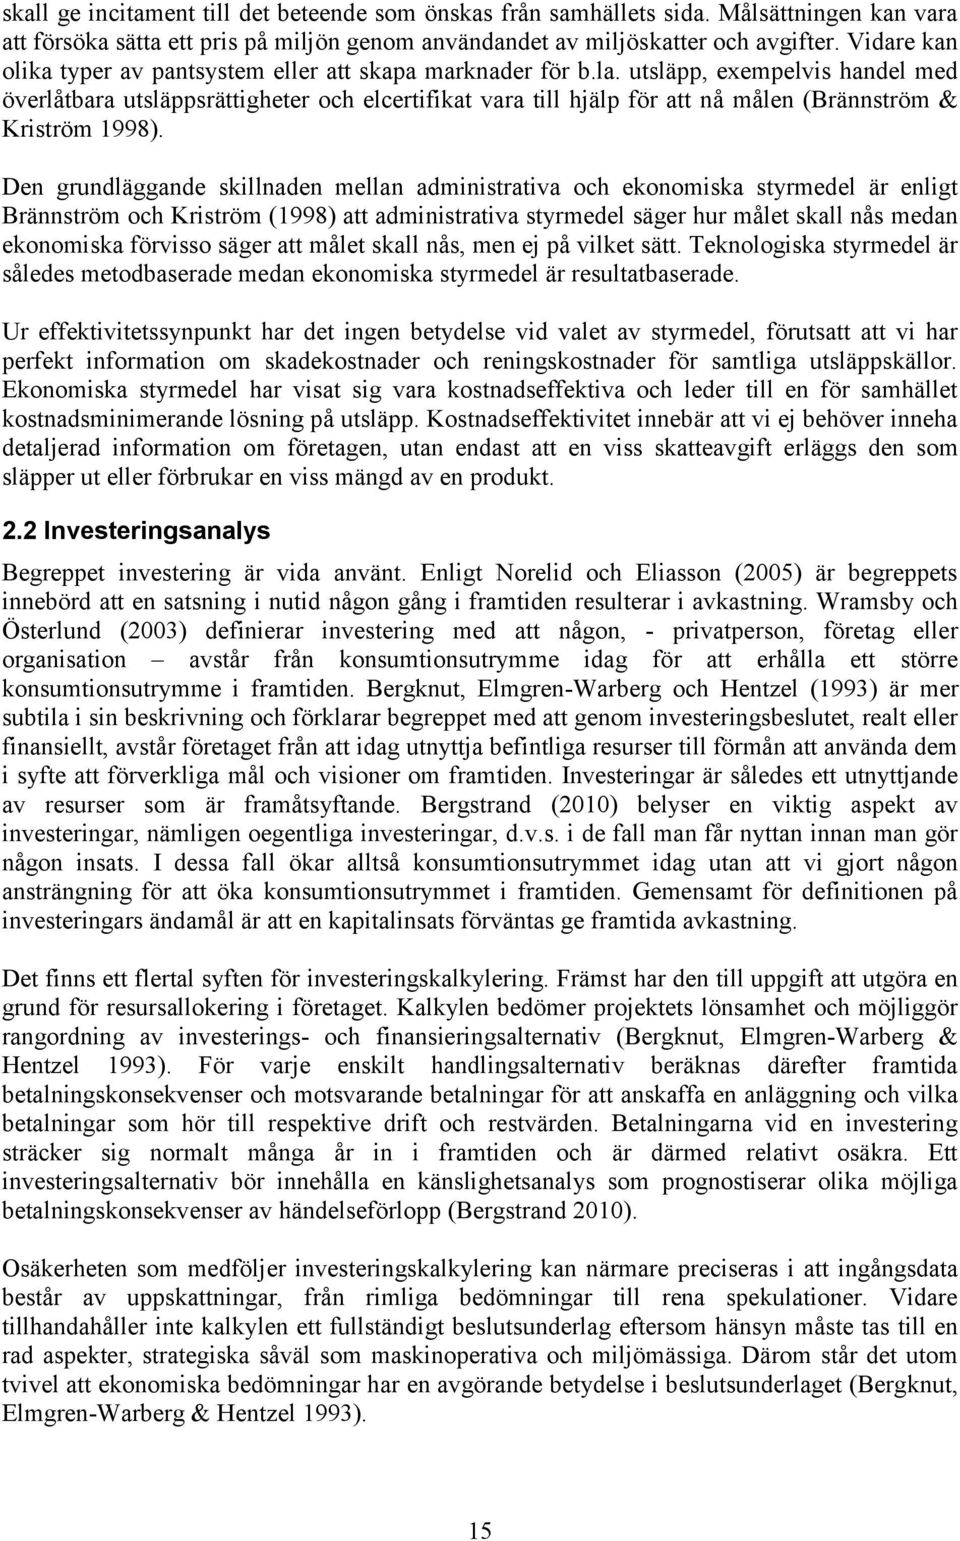 utsläpp, exempelvis handel med överlåtbara utsläppsrättigheter och elcertifikat vara till hjälp för att nå målen (Brännström & Kriström 1998).